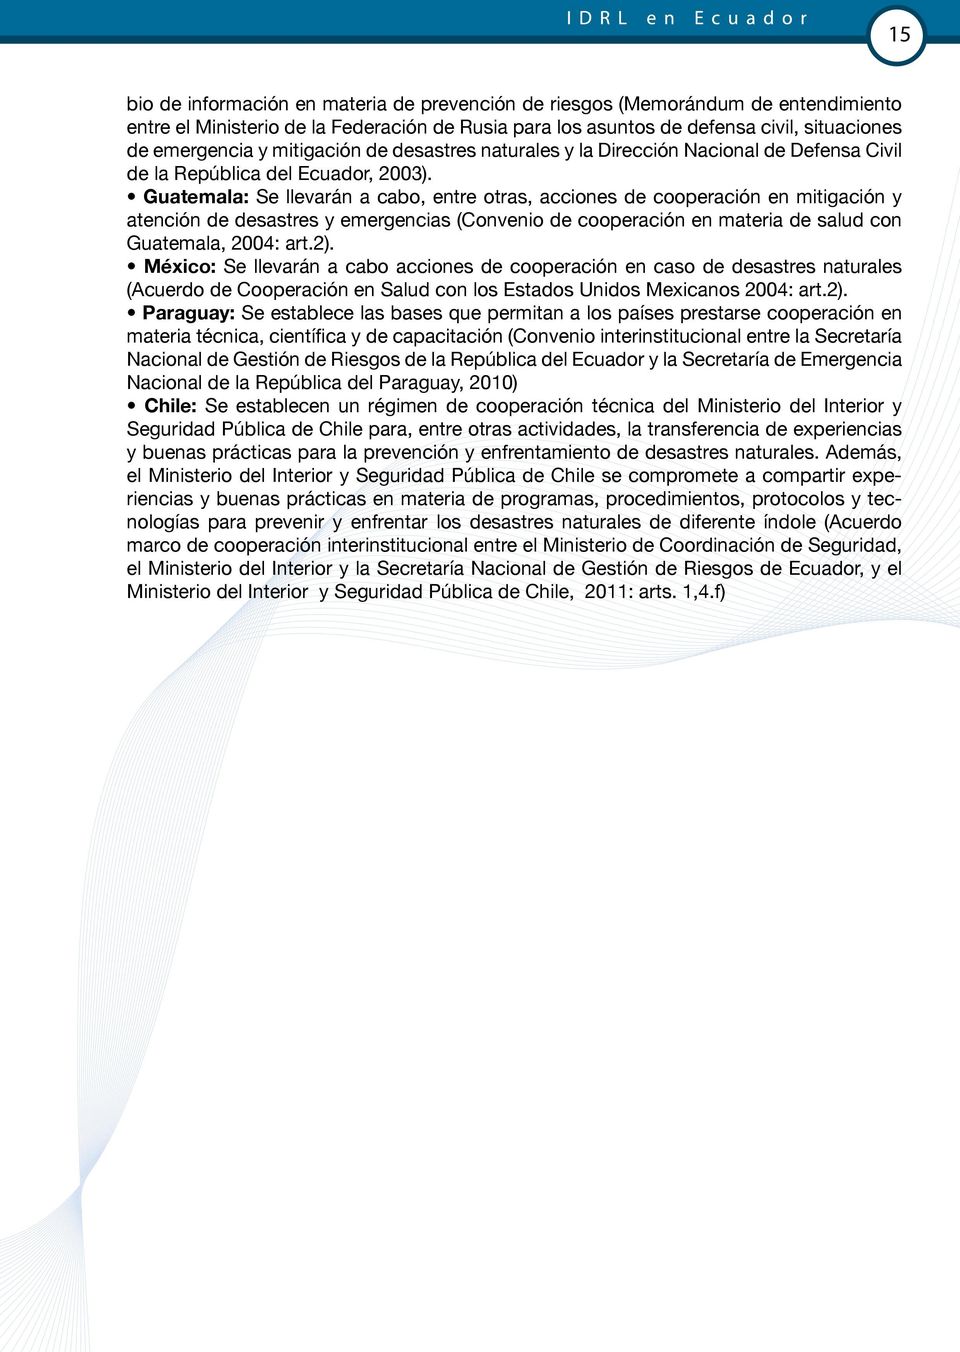 Guatemala: Se llevarán a cabo, entre otras, acciones de cooperación en mitigación y atención de desastres y emergencias (Convenio de cooperación en materia de salud con Guatemala, 2004: art.2).